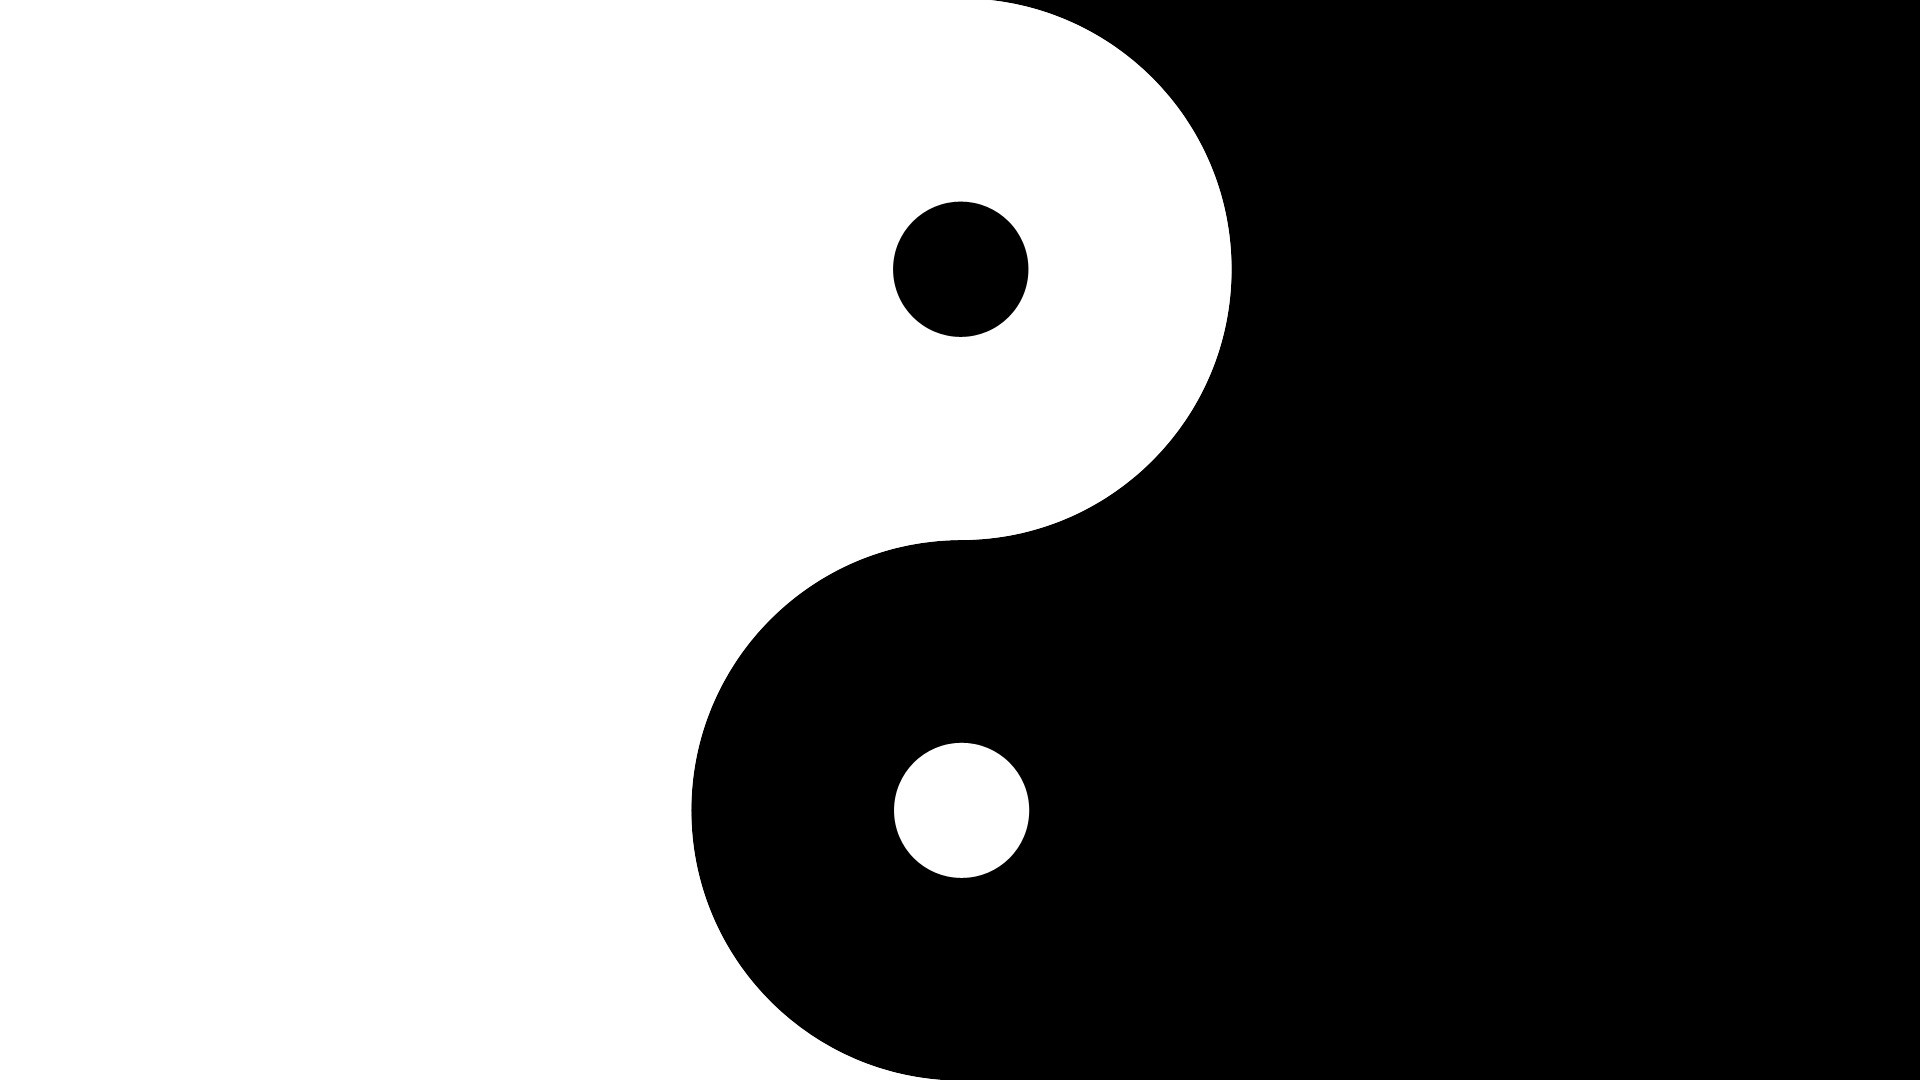 papier peint ying yang,noir et blanc,clipart,police de caractère,symbole,cercle